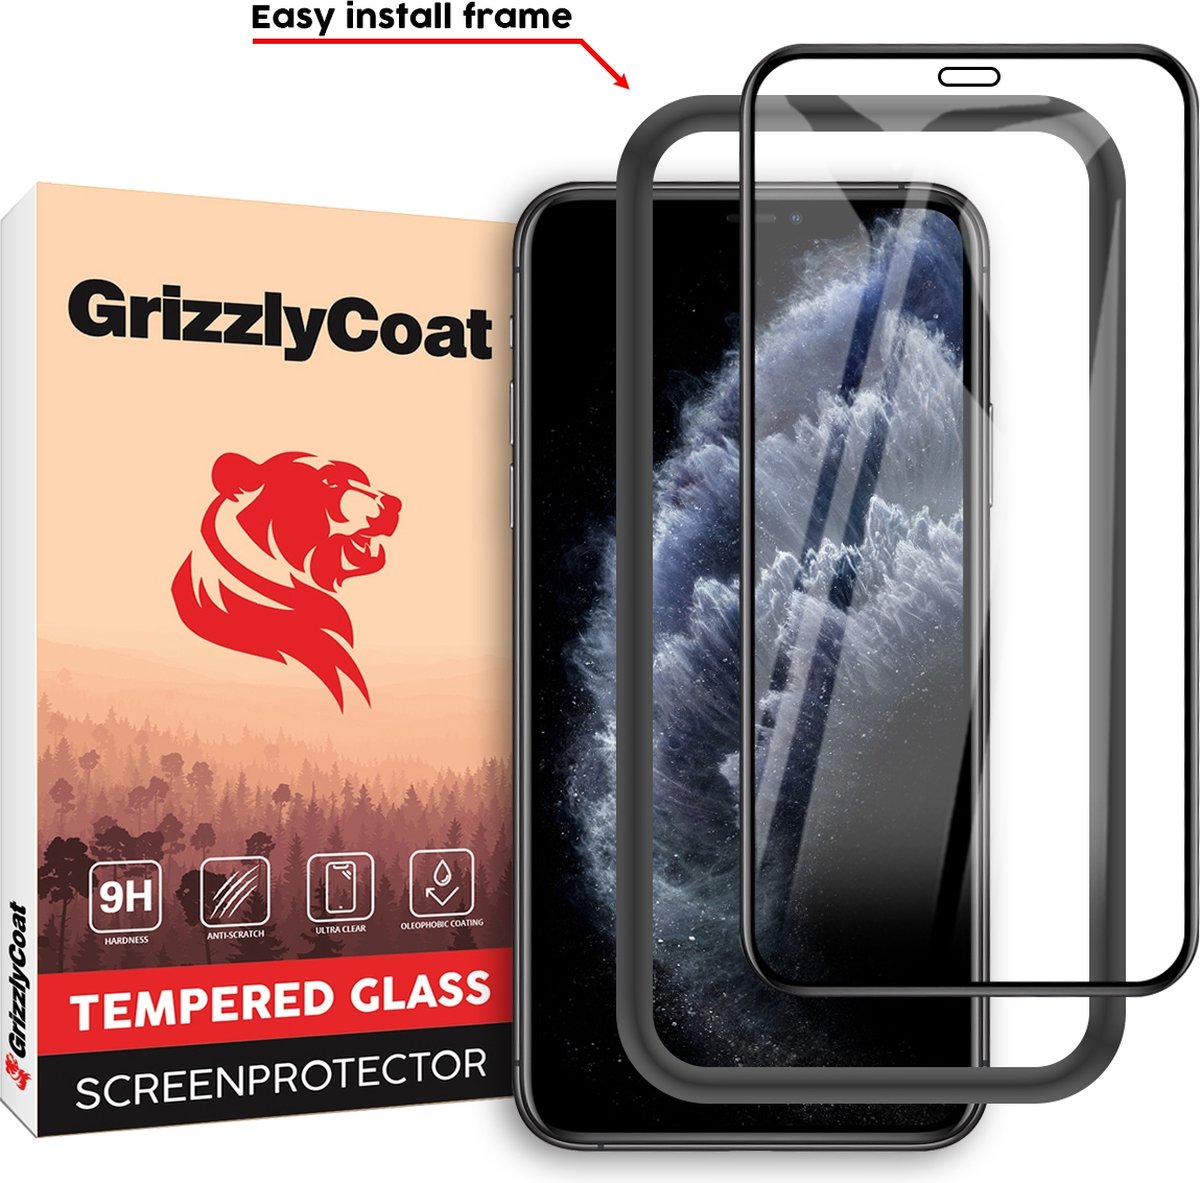 GrizzlyCoat - Screenprotector geschikt voor Apple iPhone X Glazen | GrizzlyCoat Easy Fit Screenprotector - Case Friendly + Installatie Frame - Zwart